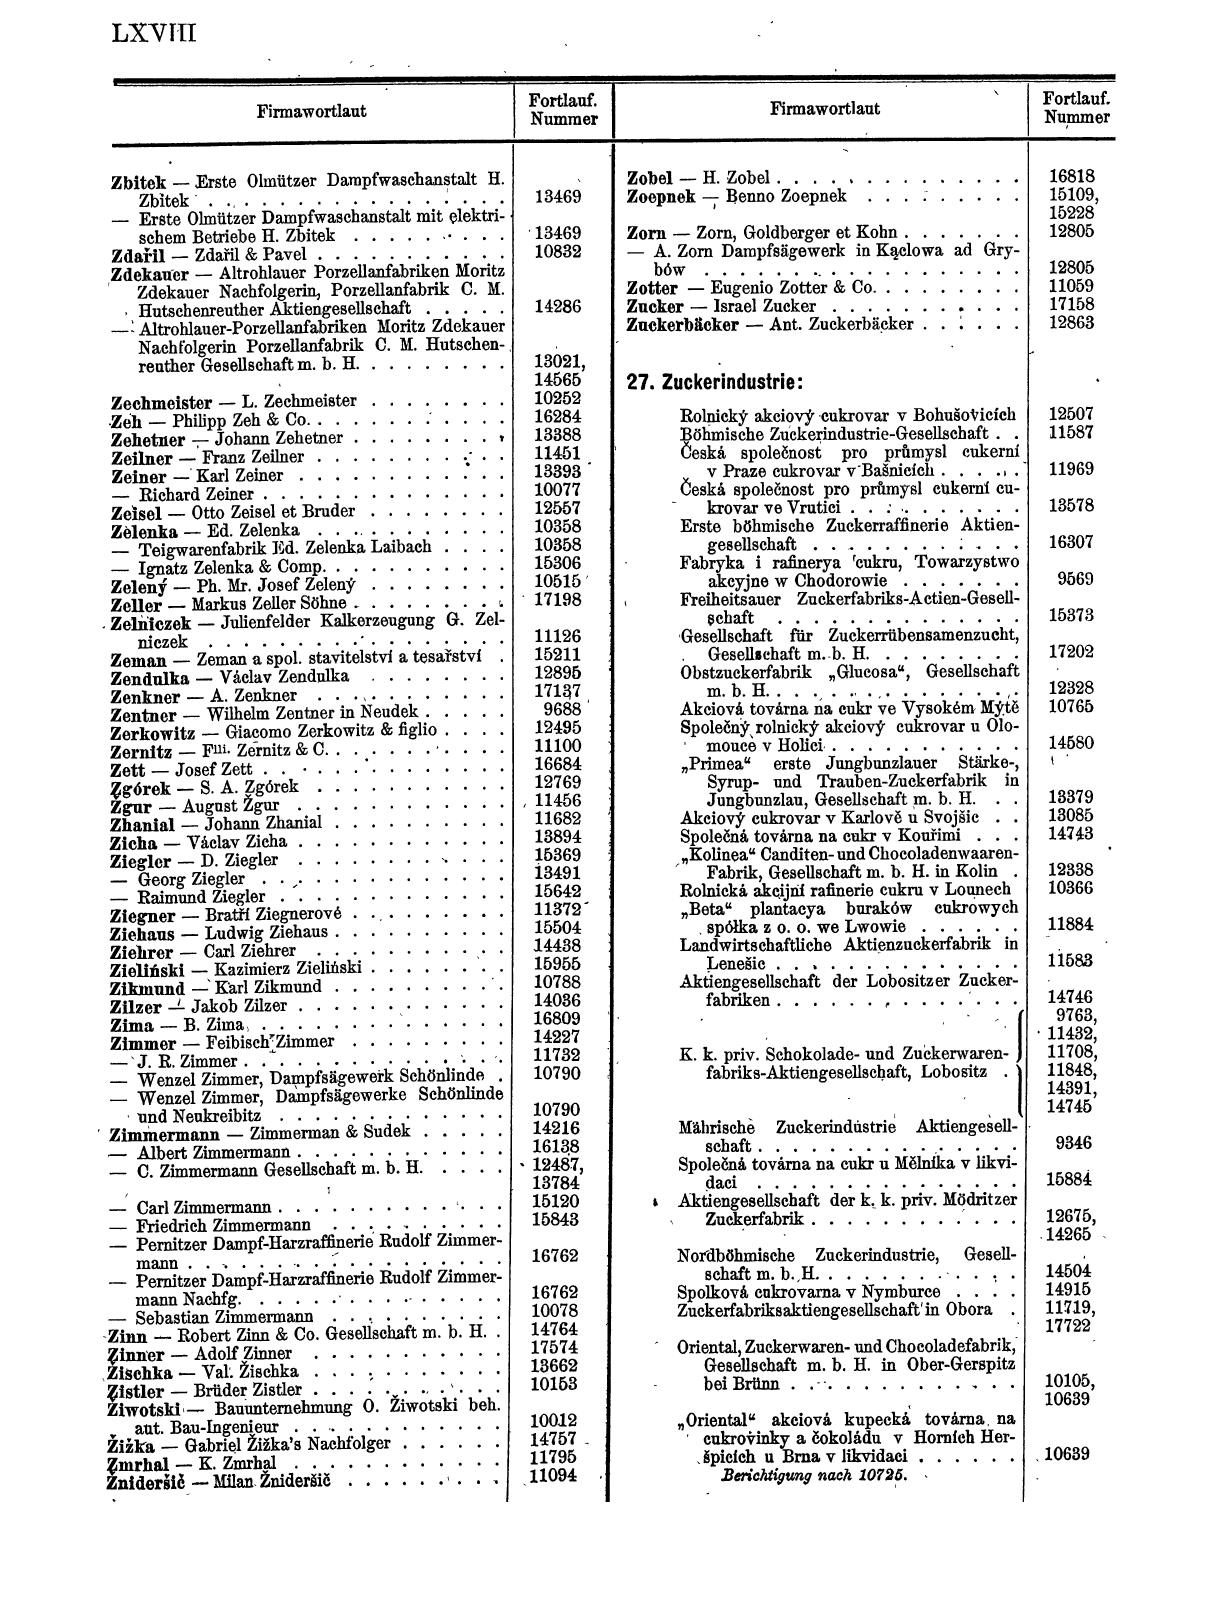 Zentralblatt für die Eintragungen in das Handelsregister 1913, Teil 2 - Seite 72